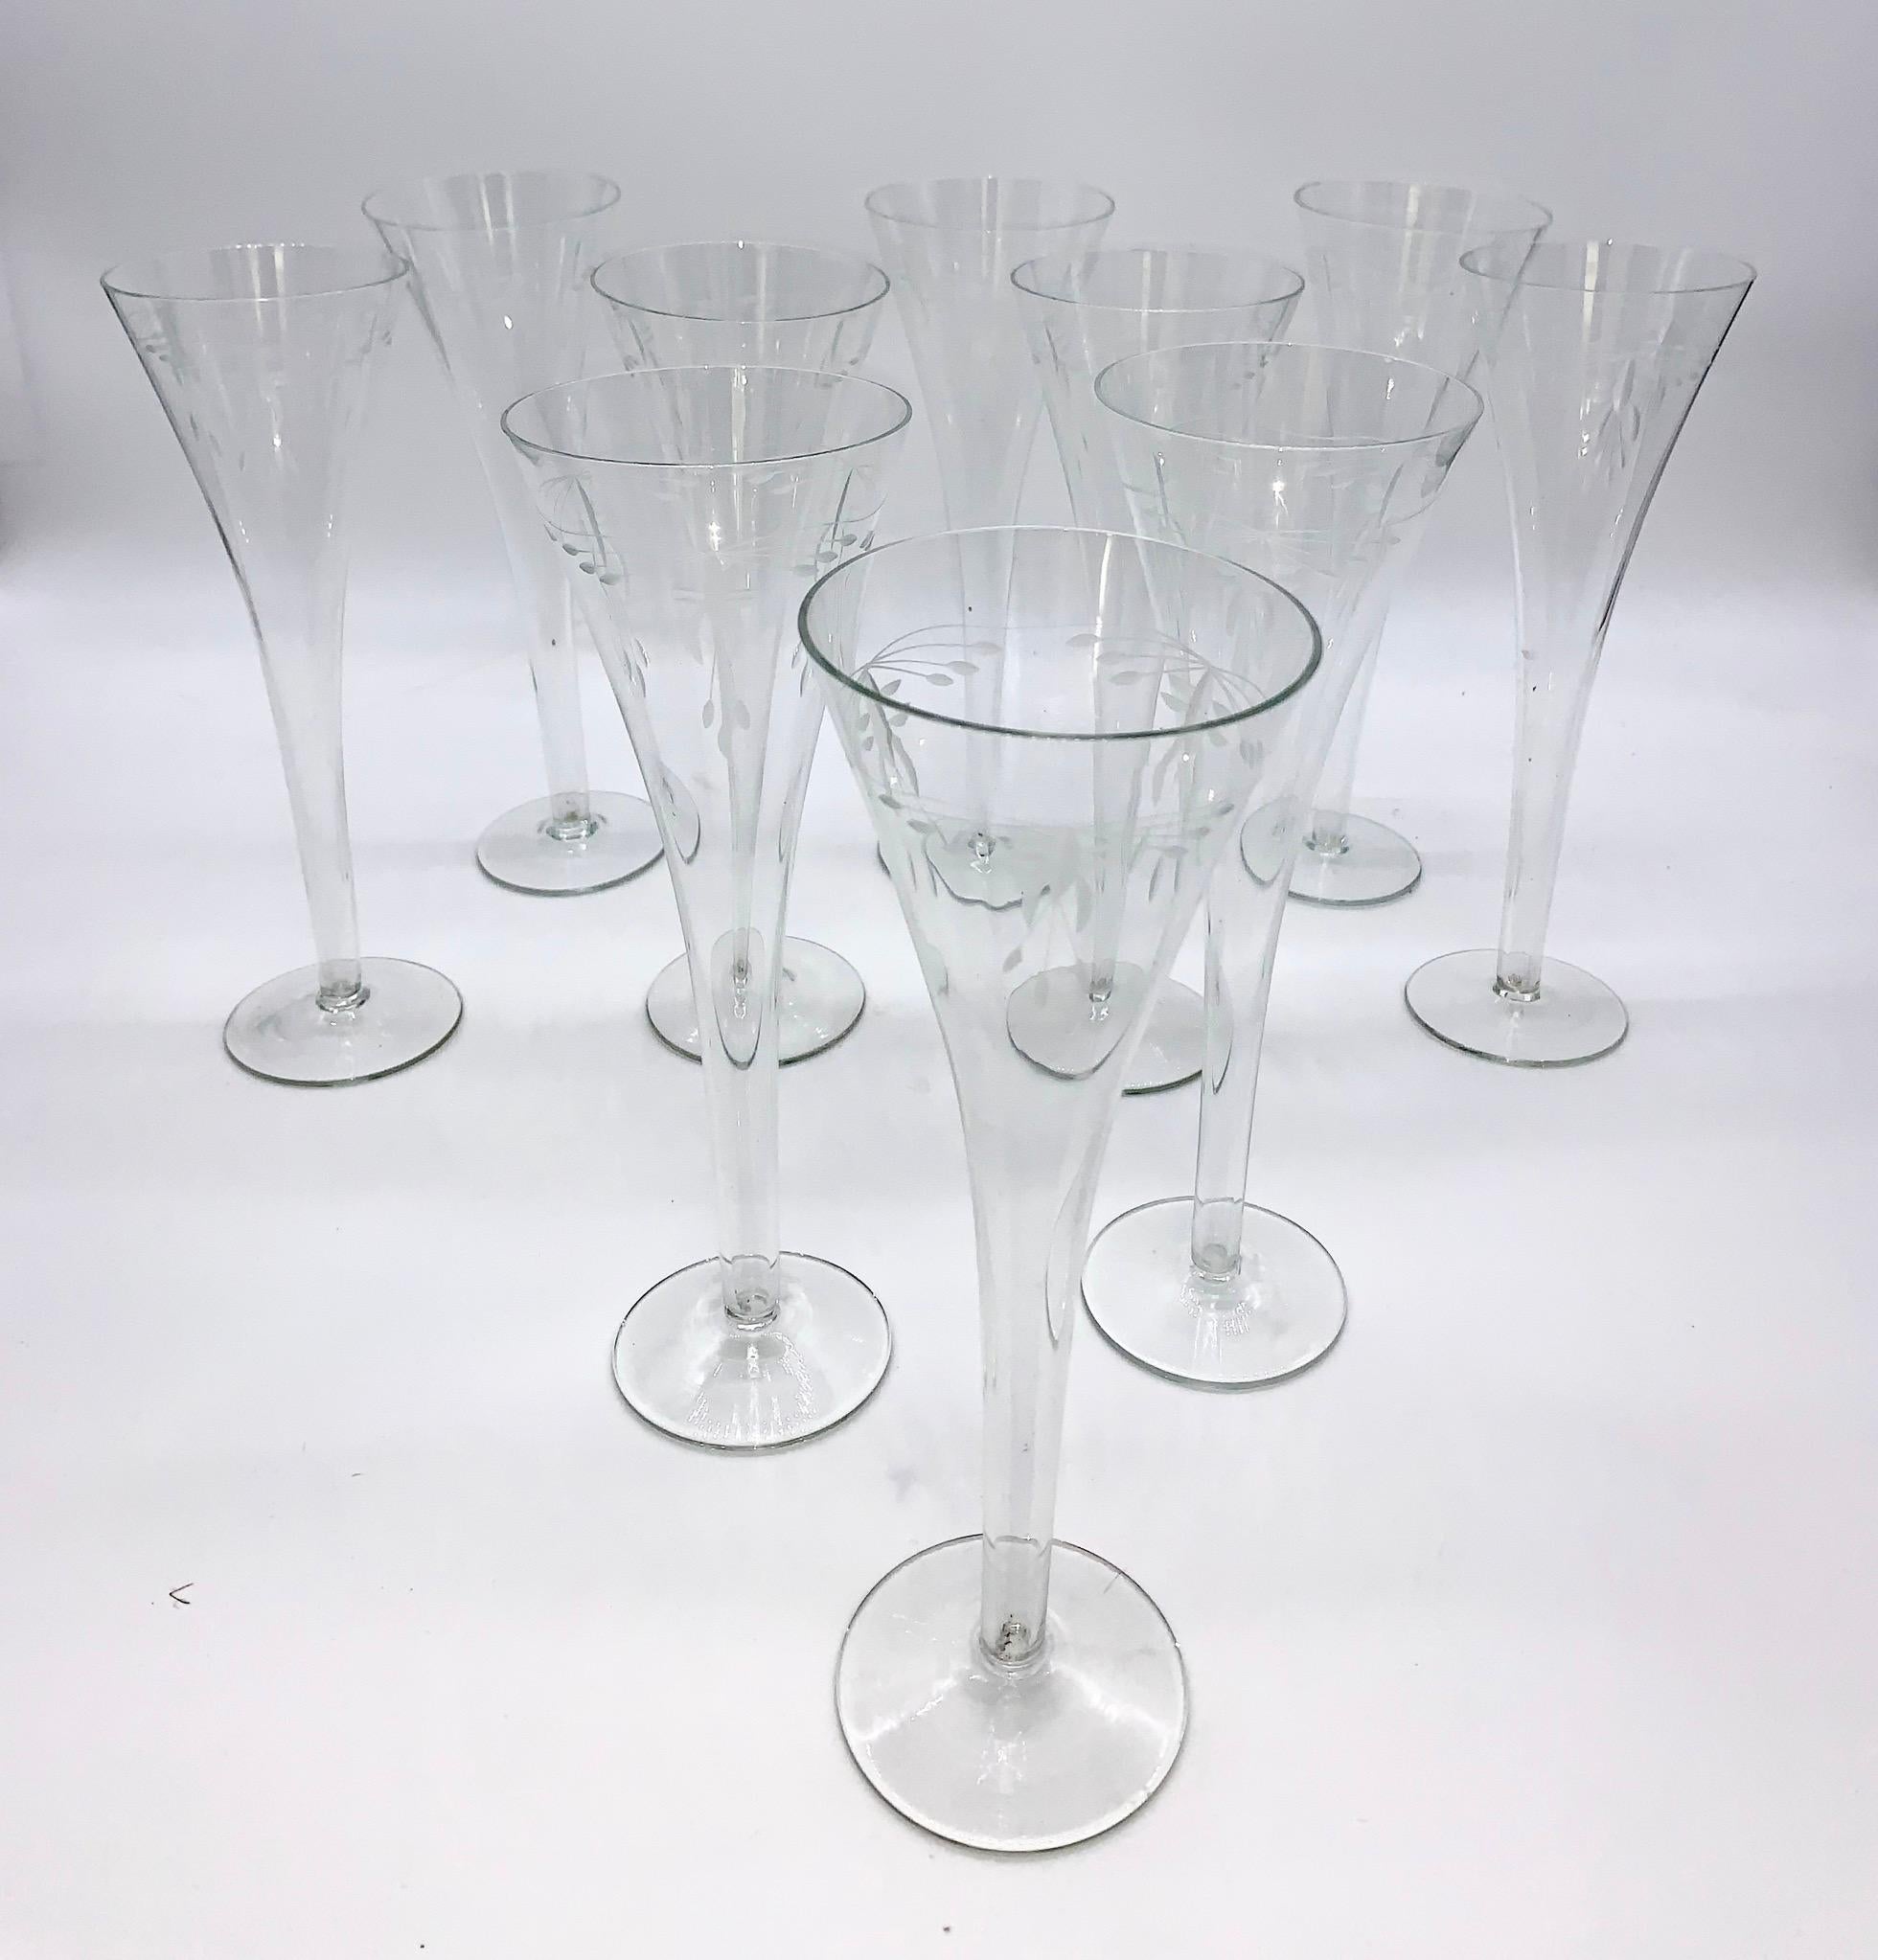 9 verres à champagne 1900-1920 en cristal Art Nouveau soufflé à la main avec des fleurs gravées.